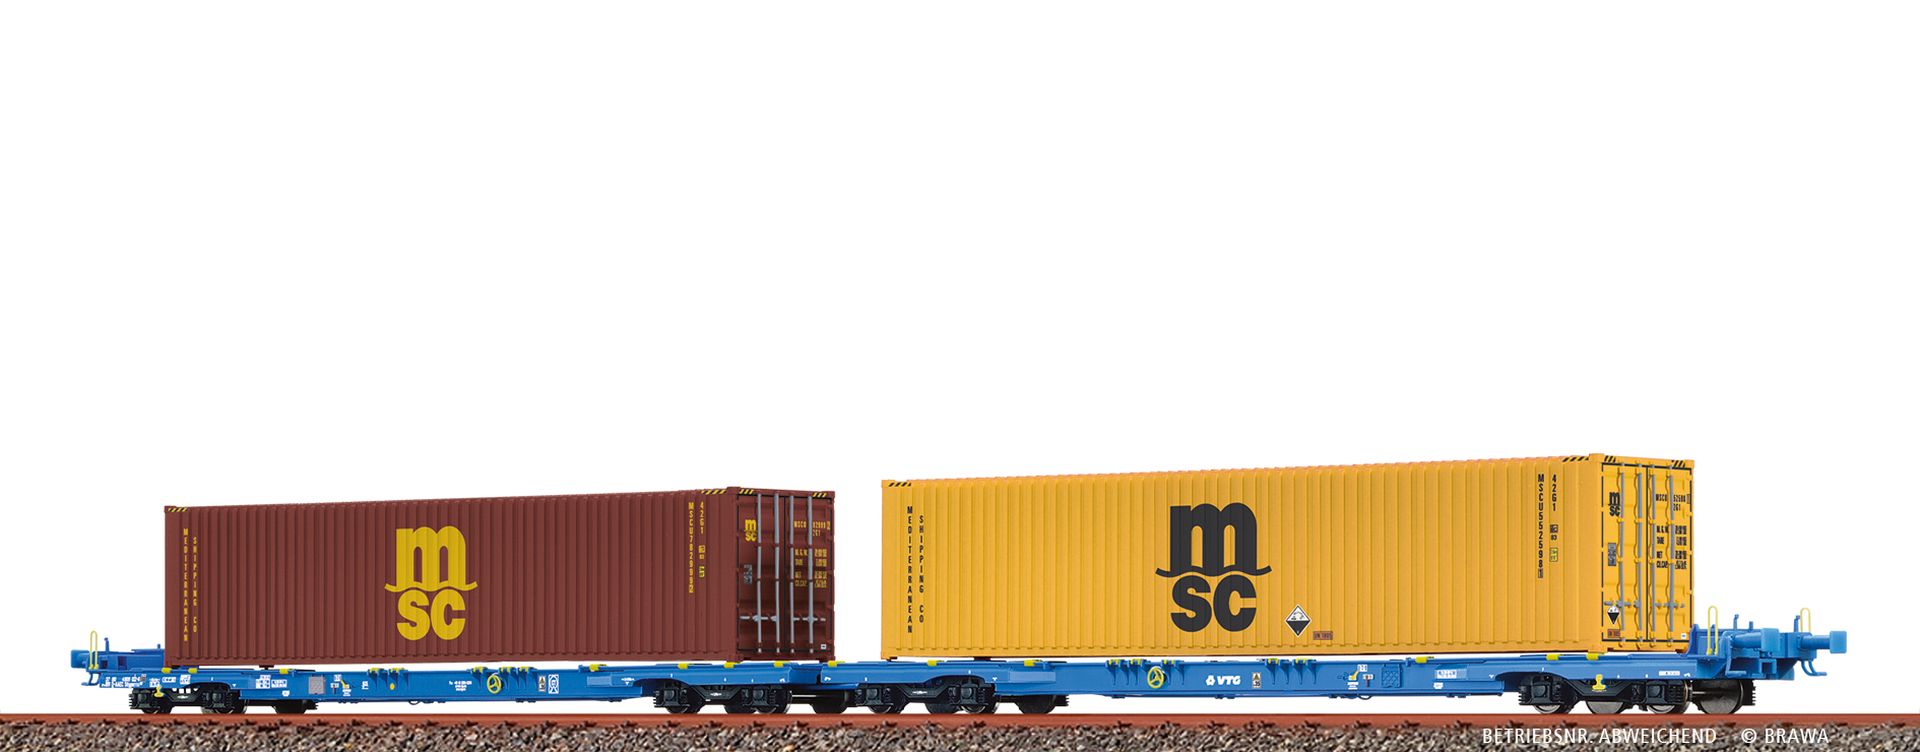 Brawa 48108 - Containerwagen Sffggmrrss197 40'-Containern 'MSC', VTG, Ep.VI